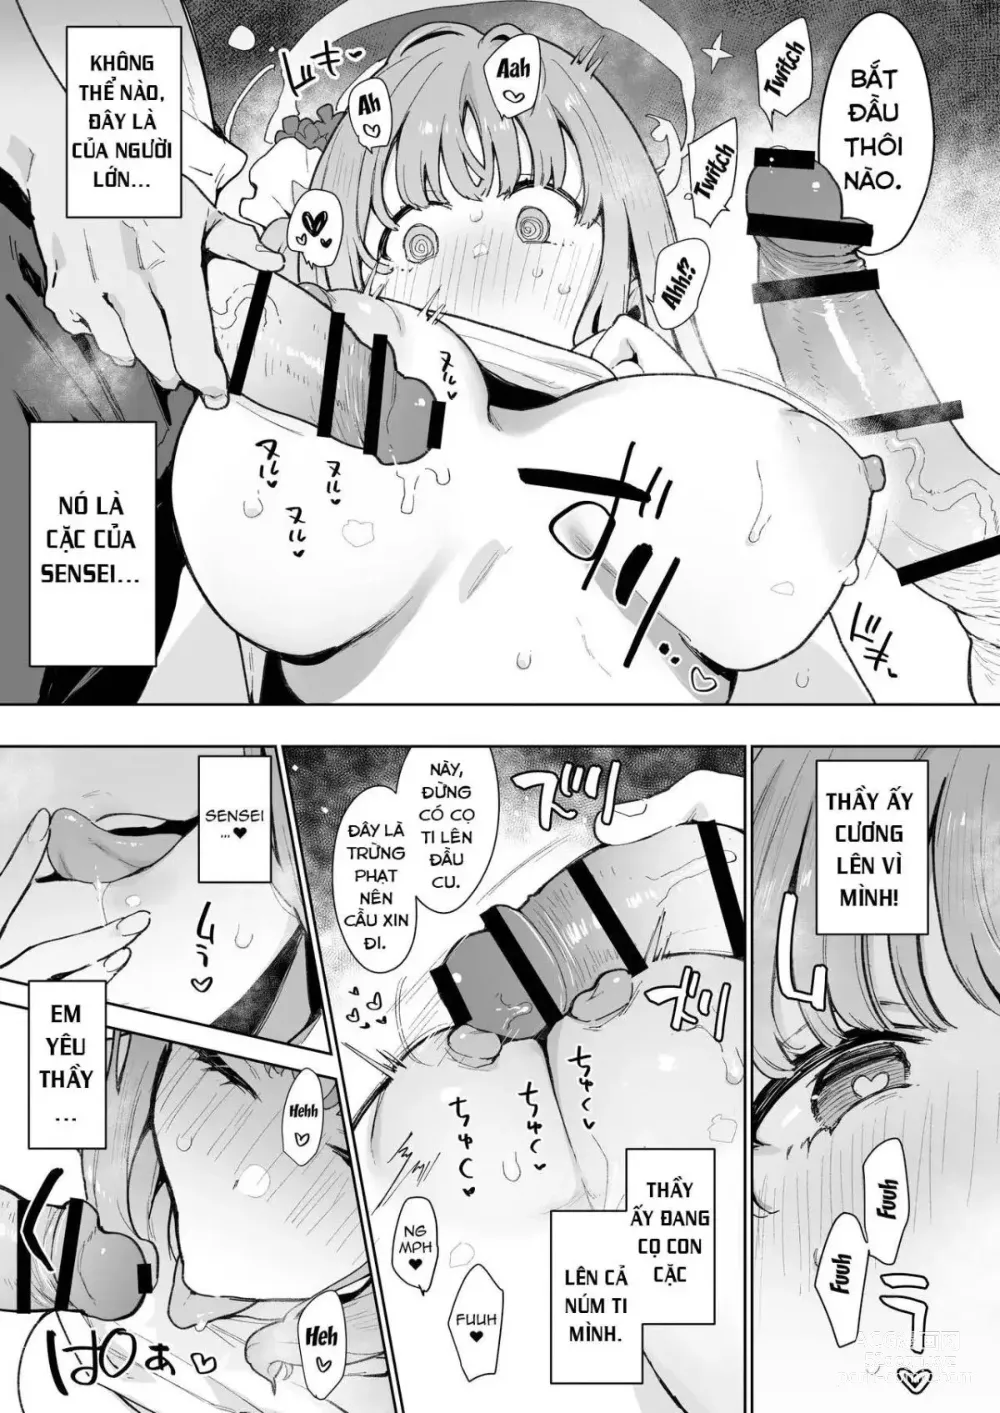 Page 12 of doujinshi Mika muốn bị đạo tàn bụ